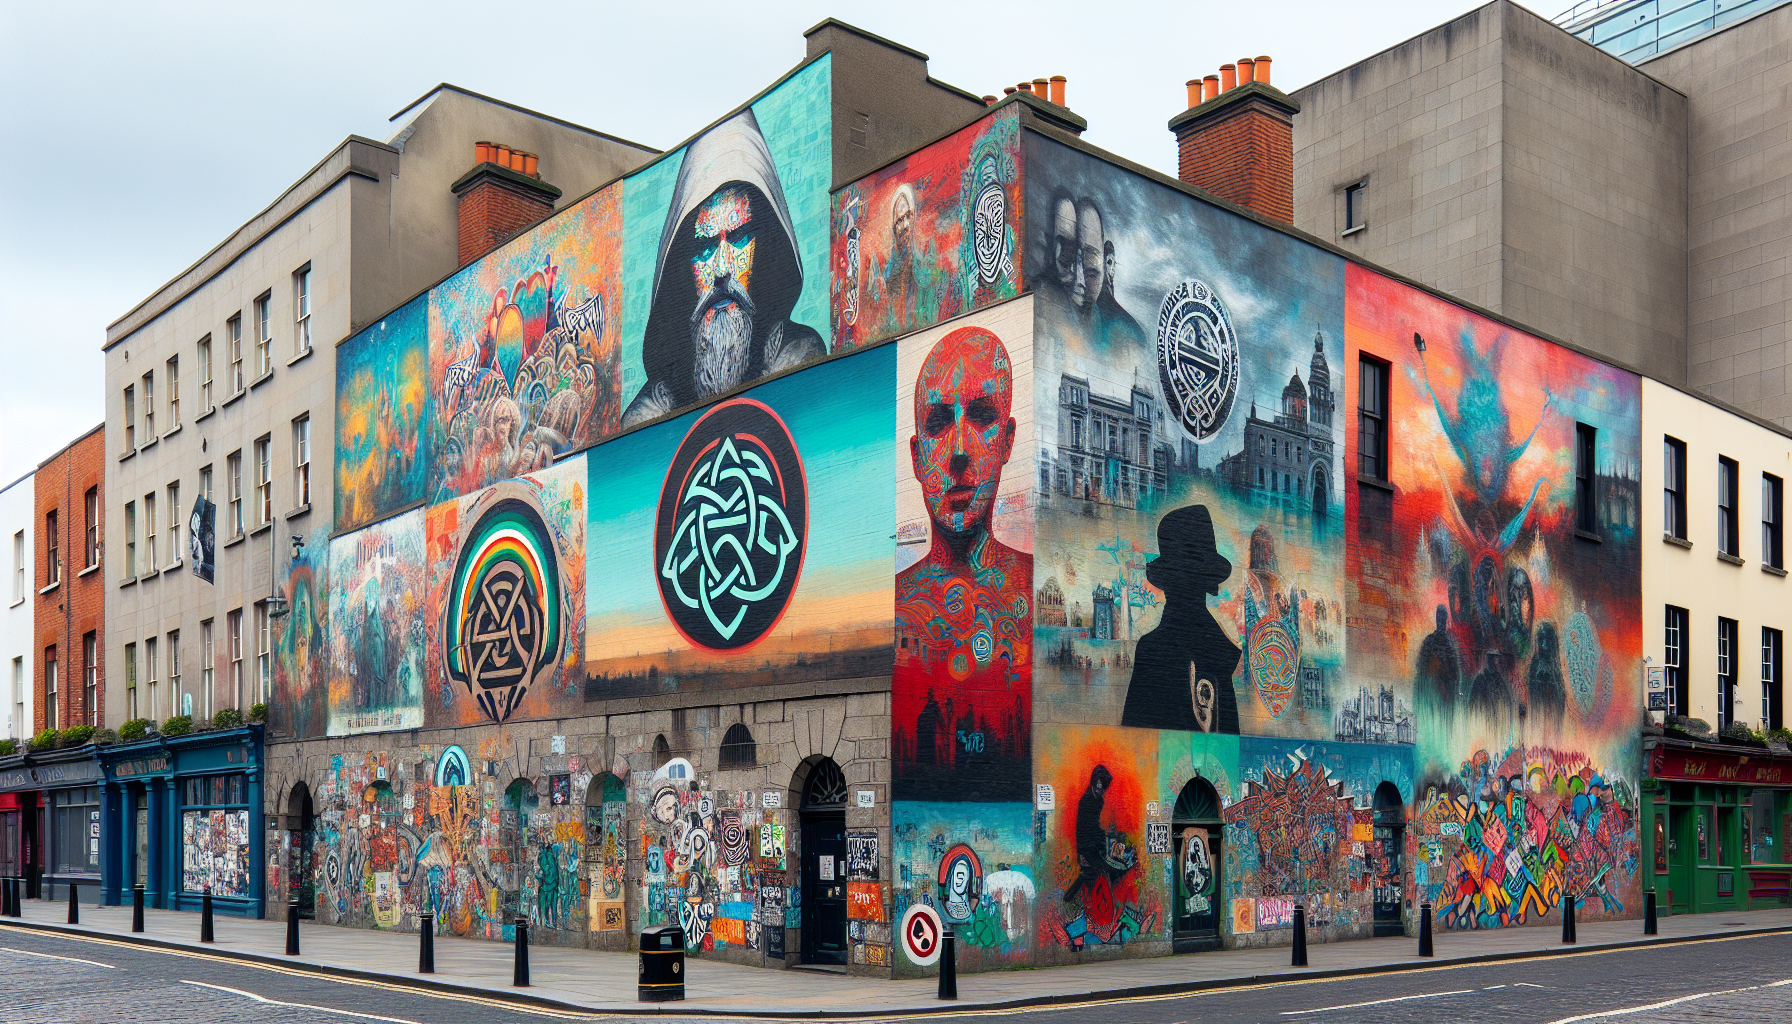 Colorful street art in Dublin city center